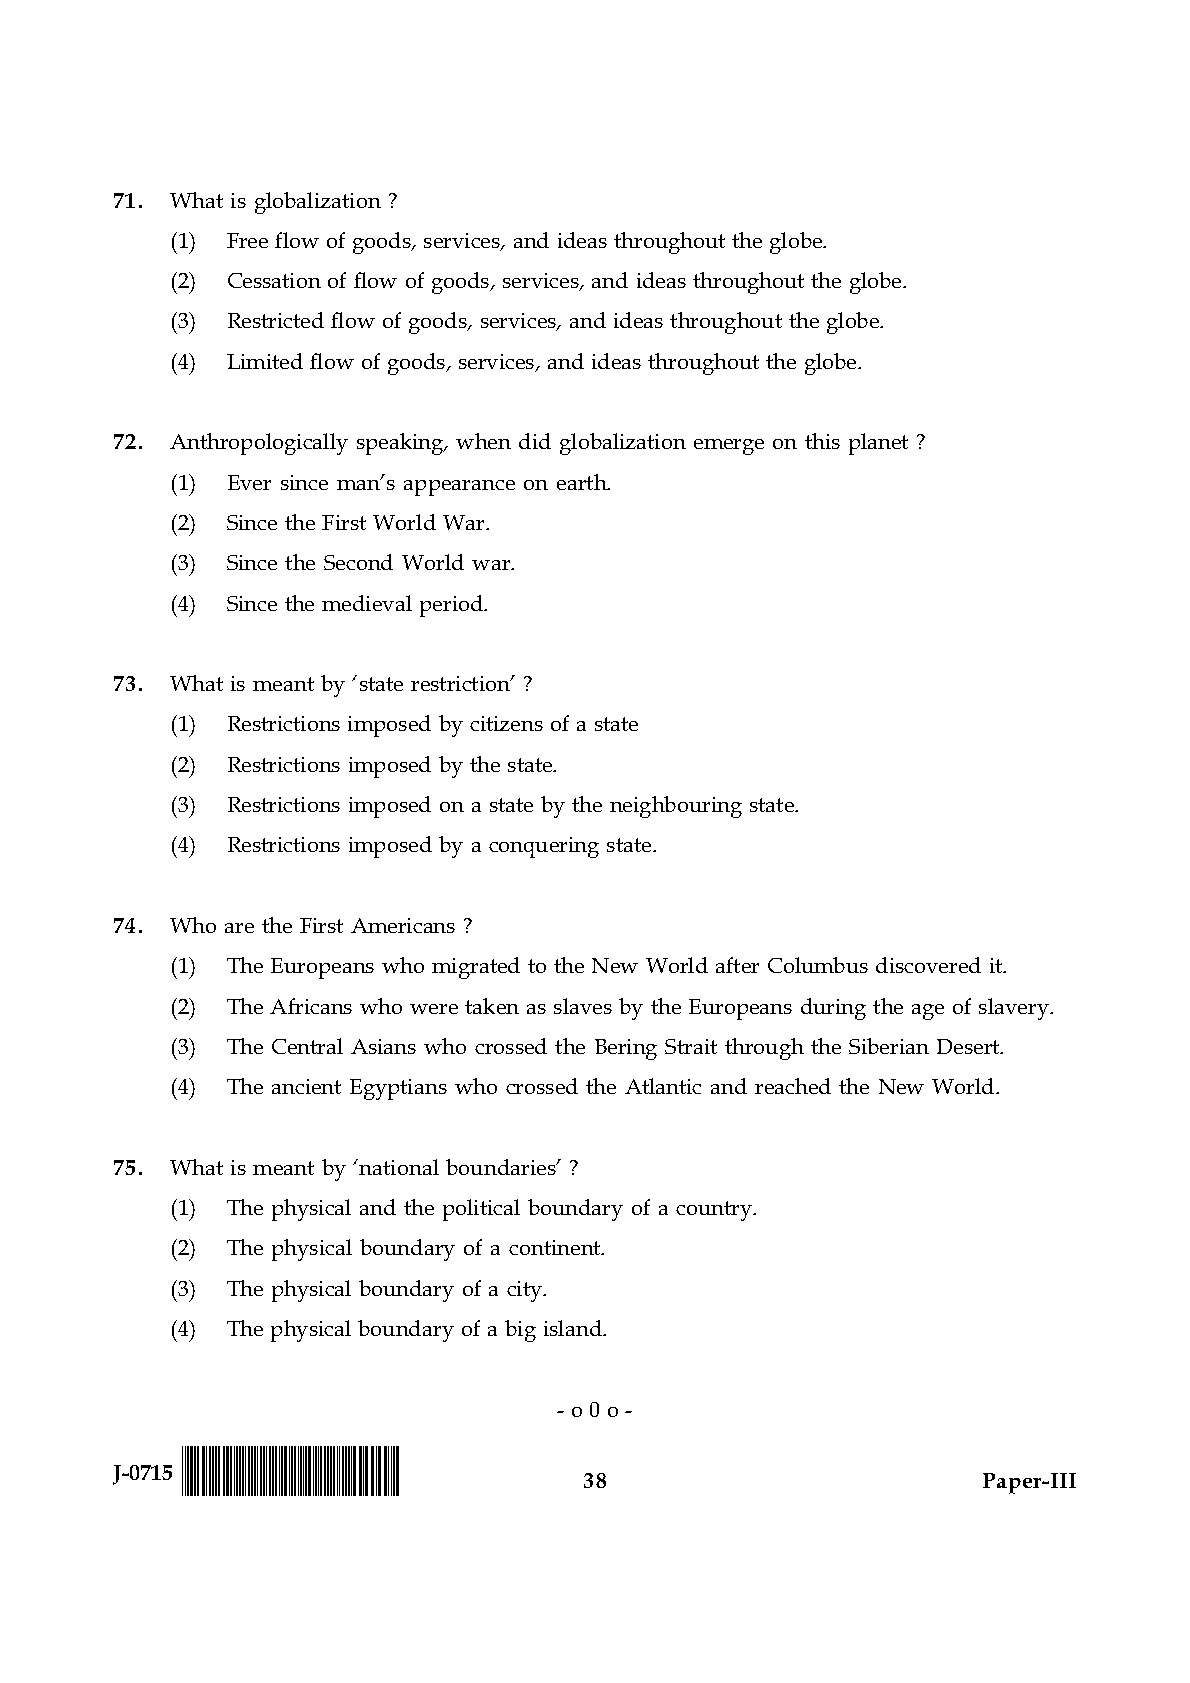 UGC NET Anthropology Question Paper III June 2015 38